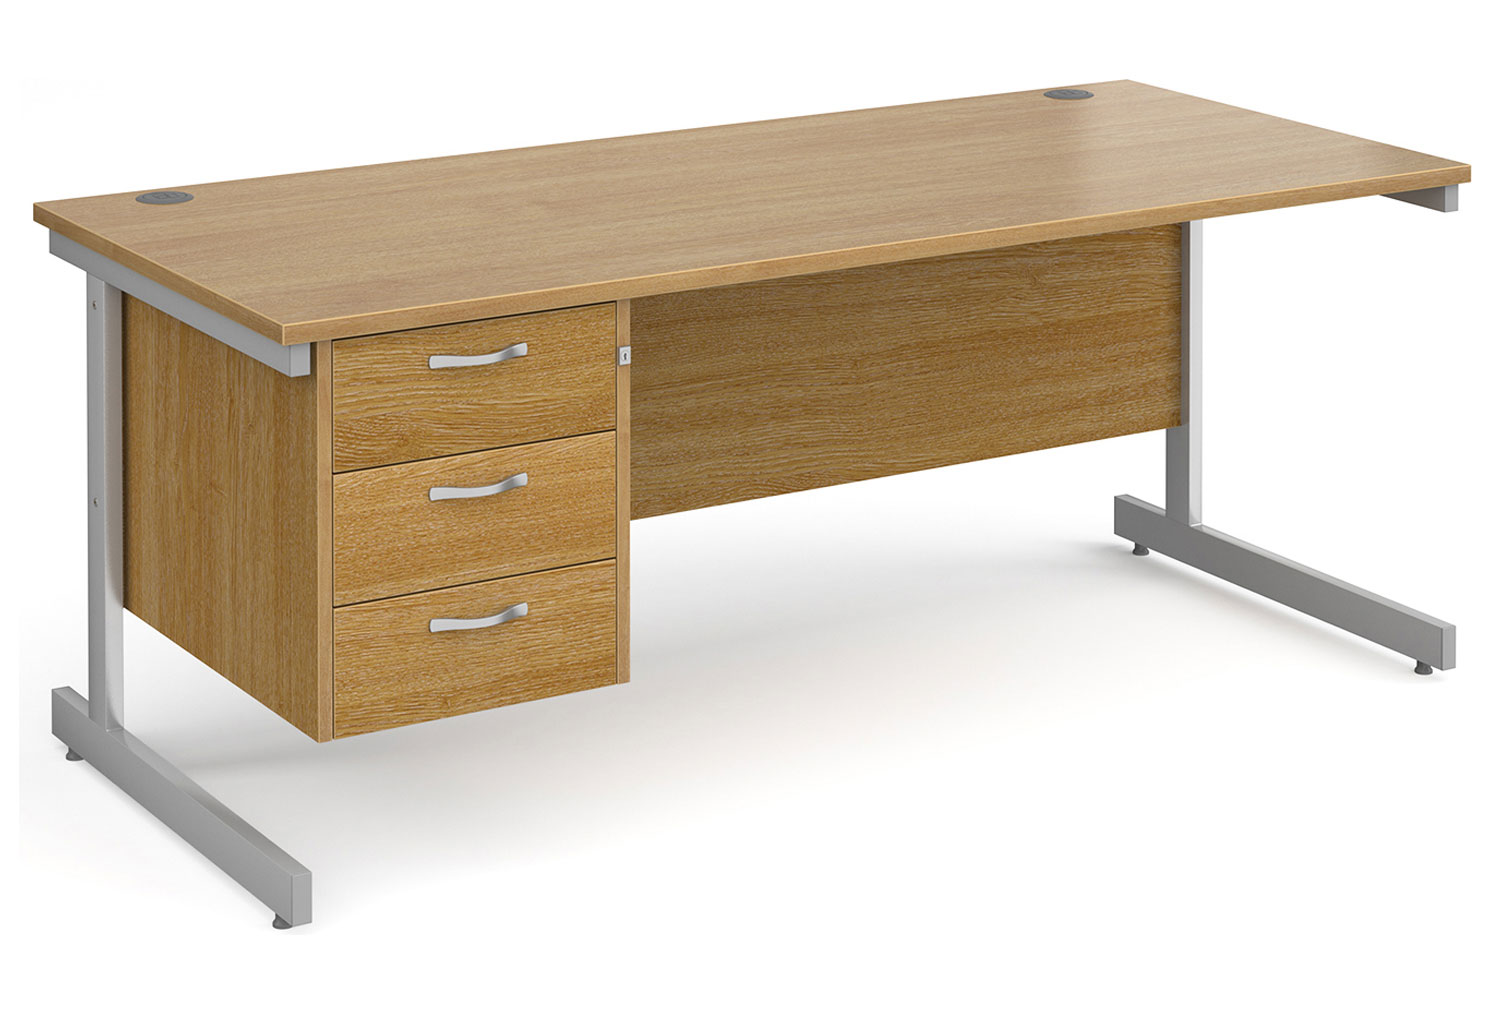 Tully I Rectangular Office Desk 3 Drawers, 180wx80dx73h (cm), Oak, Fully Installed